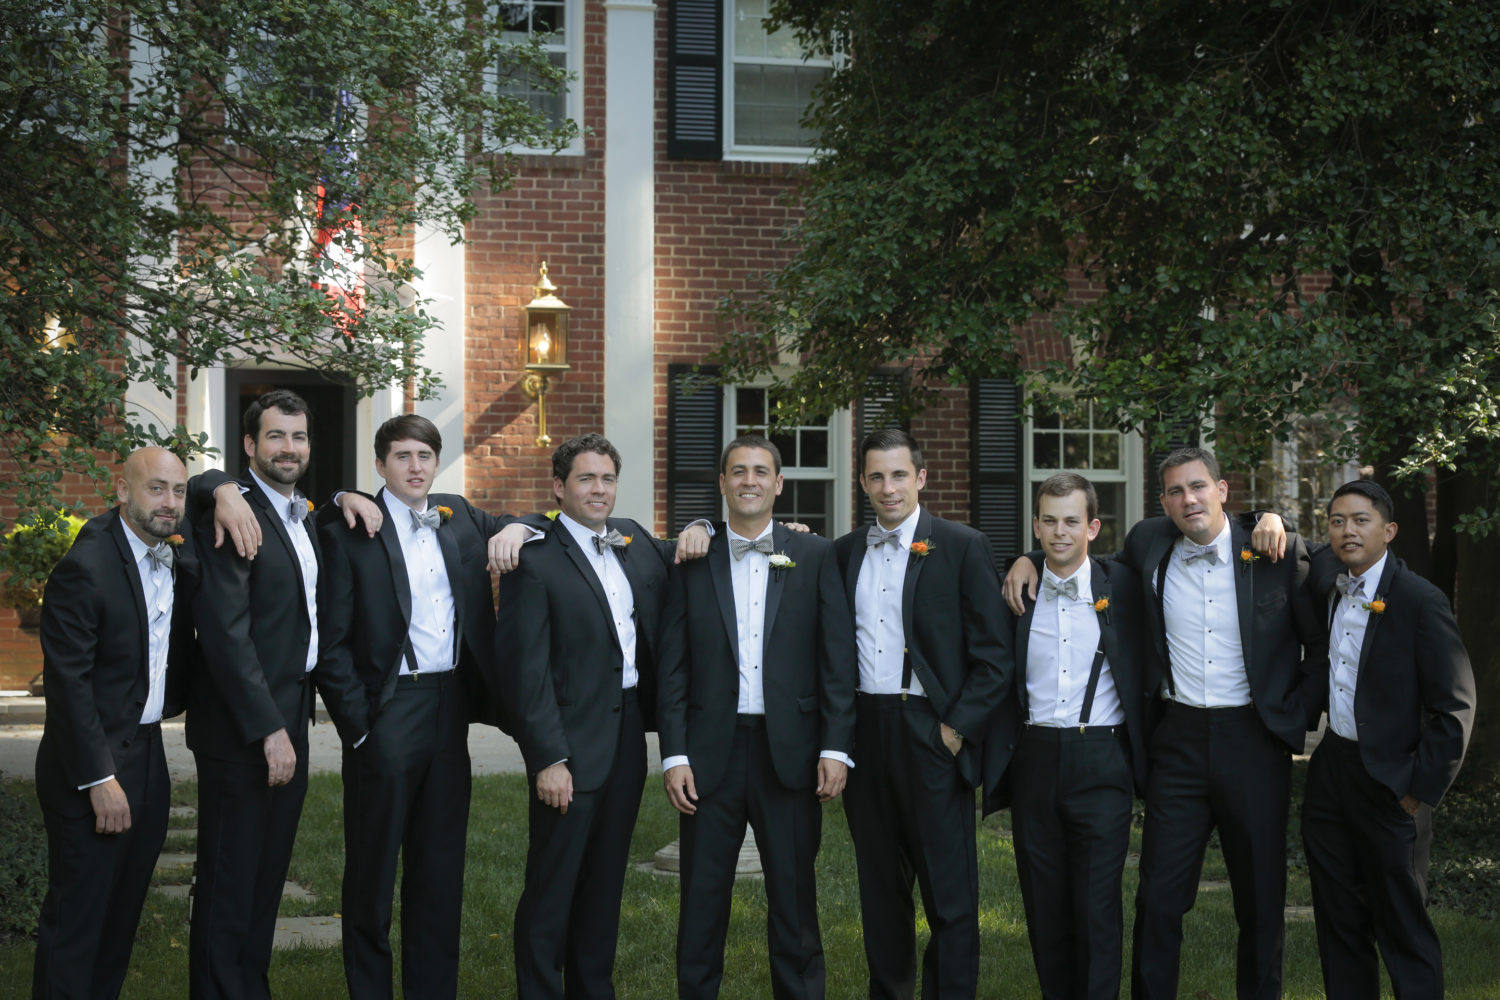 groomsmen bowties and suspenders